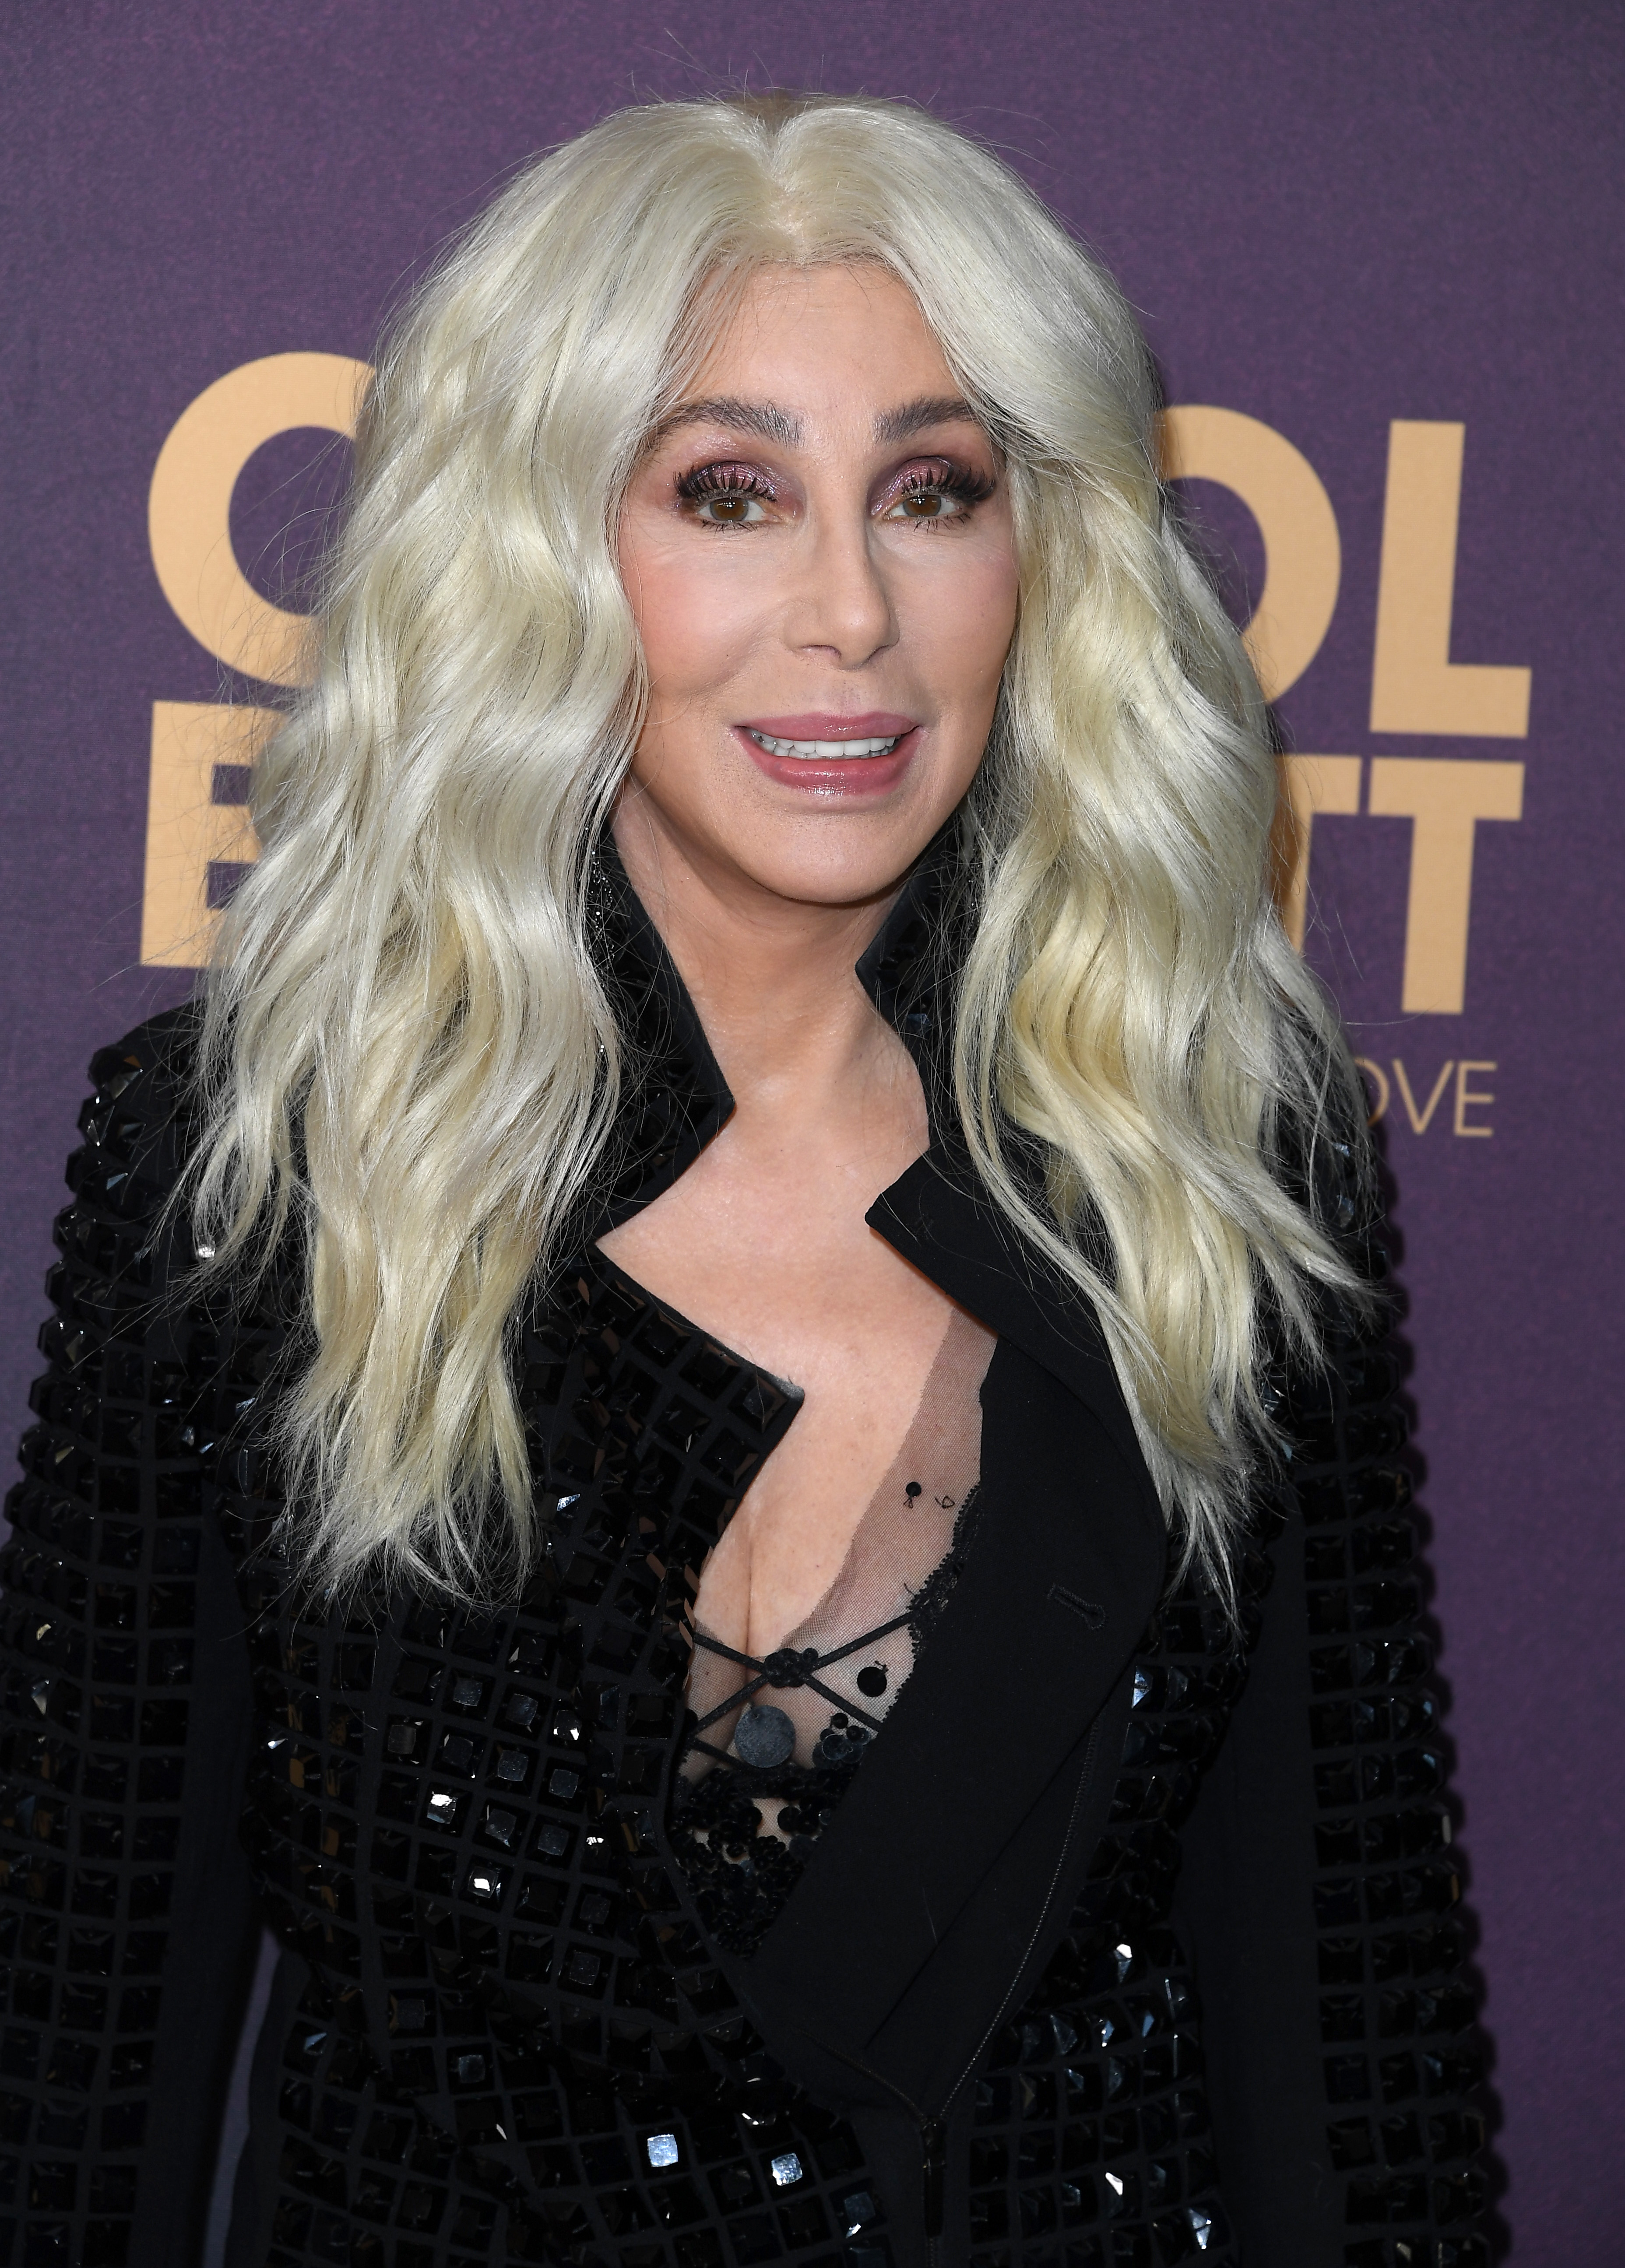 Manche verglichen die junge Frau sogar mit der 77-jährigen amerikanischen Sängerin Cher